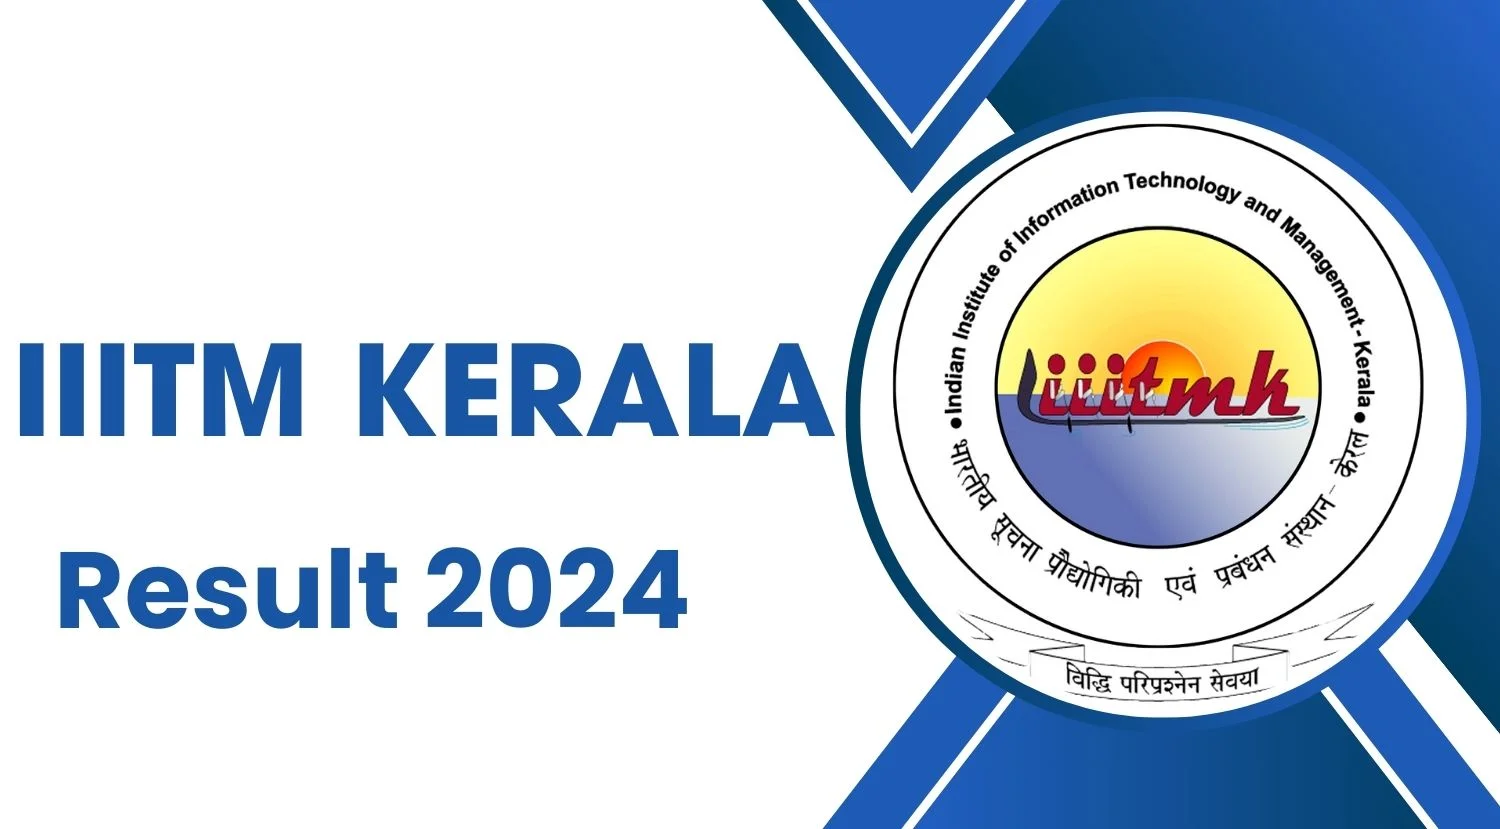 IIITM Kerala Result 2024